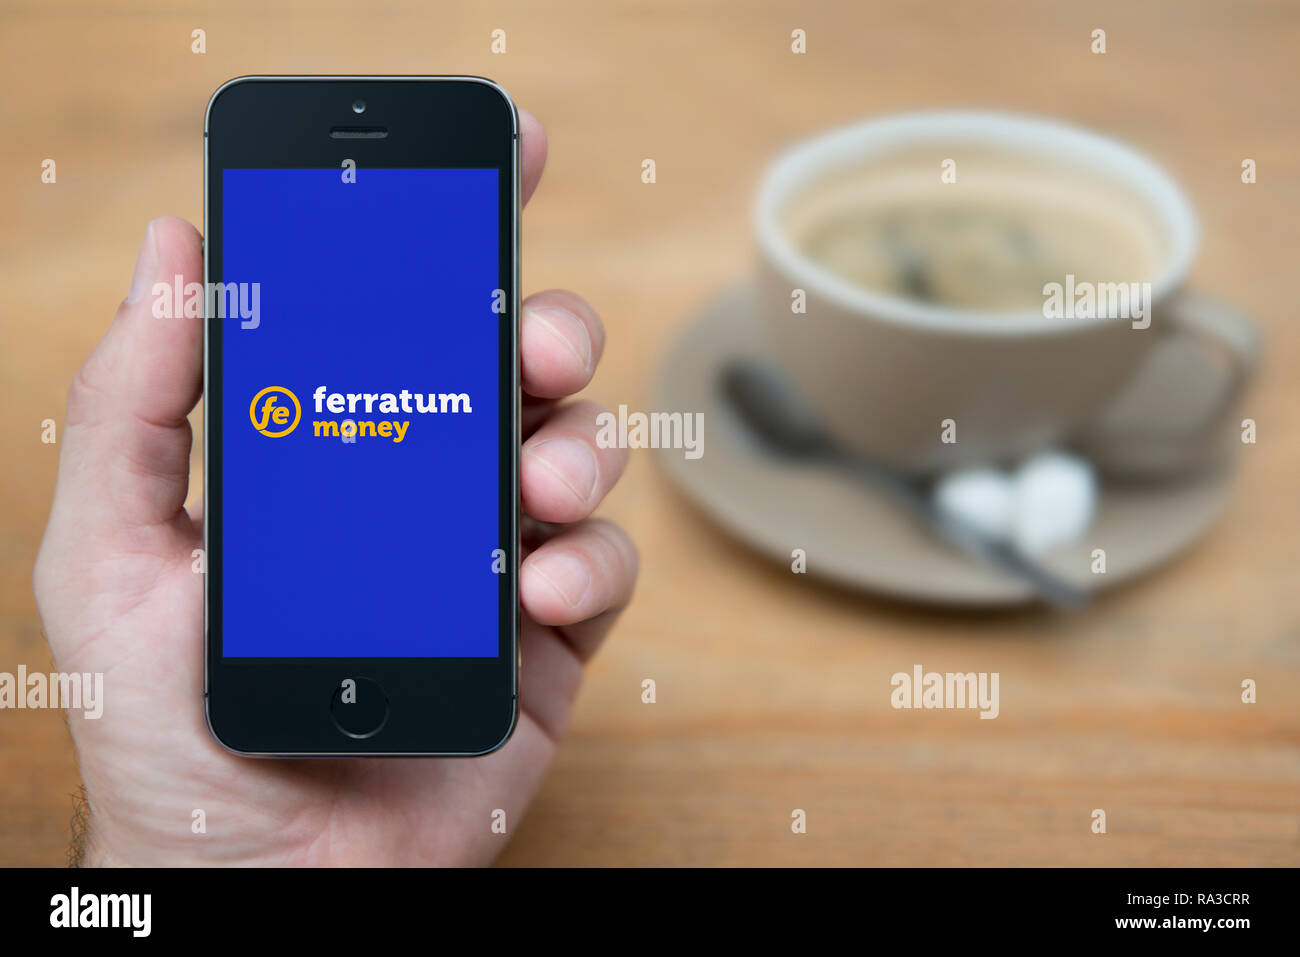 Un uomo guarda al suo iPhone che visualizza il logo Ferratum (solo uso editoriale). Foto Stock